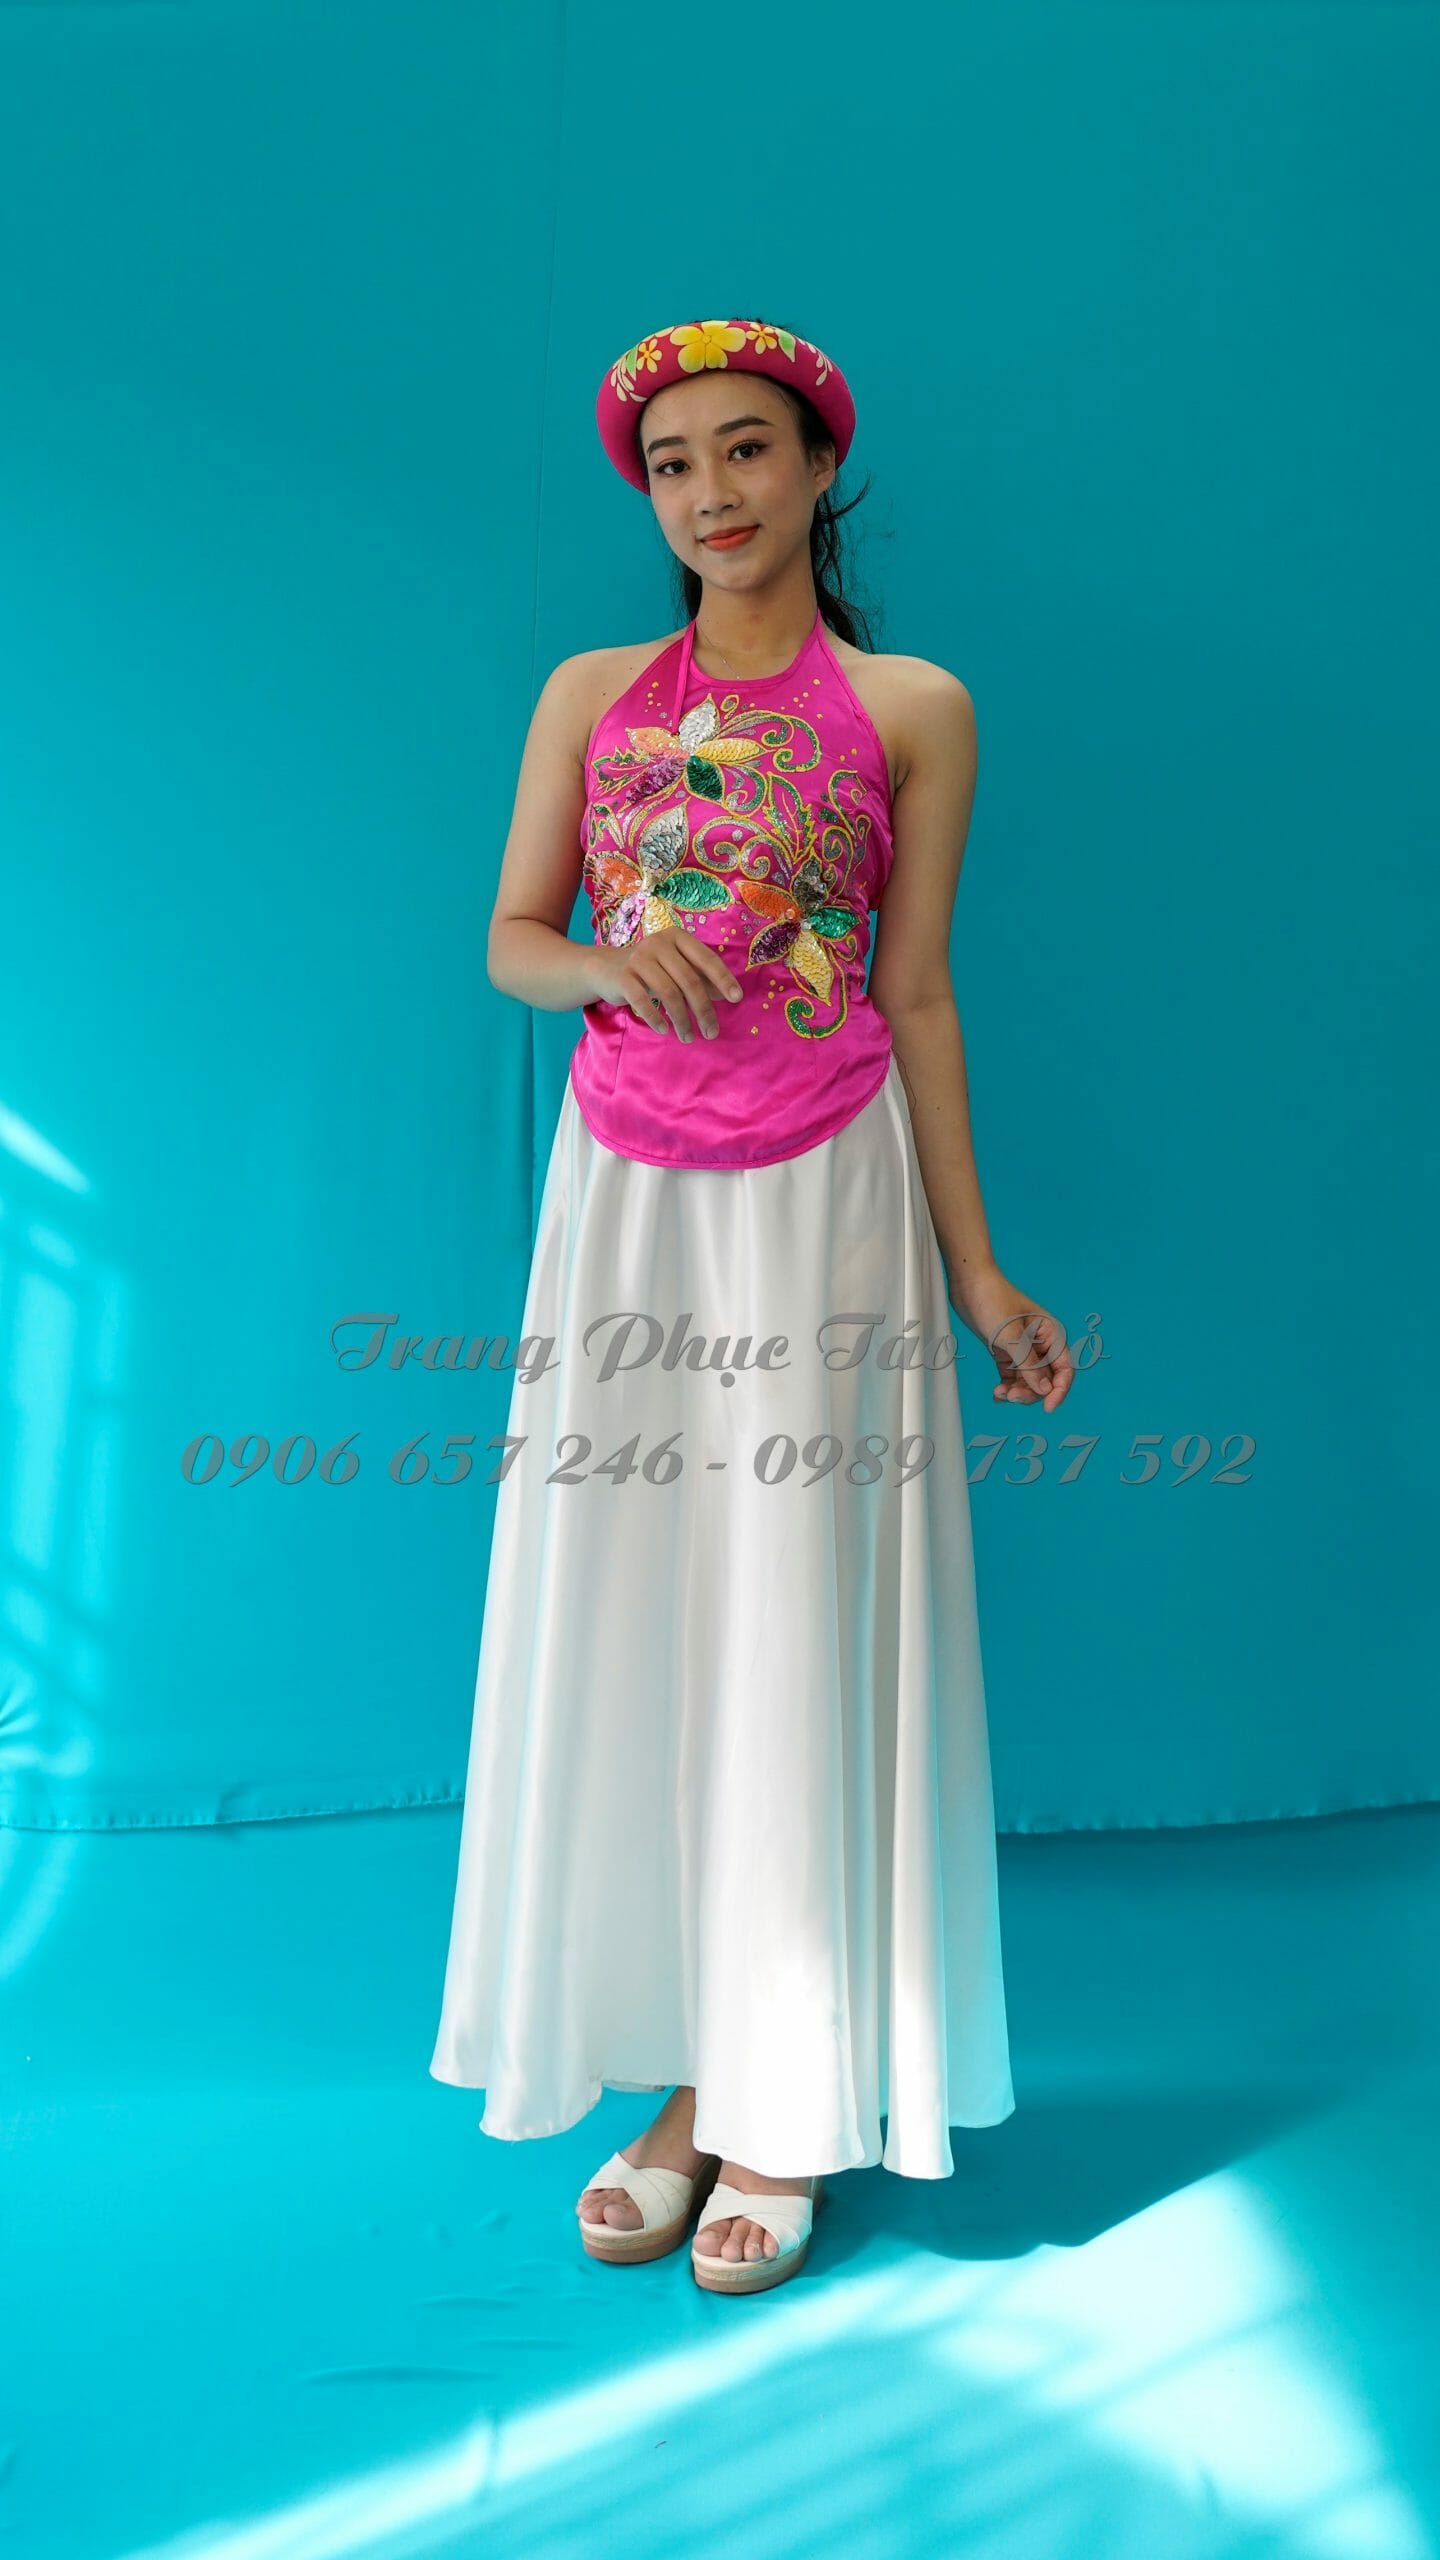 Top 8 Cửa hàng cho thuê trang phục biểu diễn đẹp nhất tại Hà Nội   toplistvn